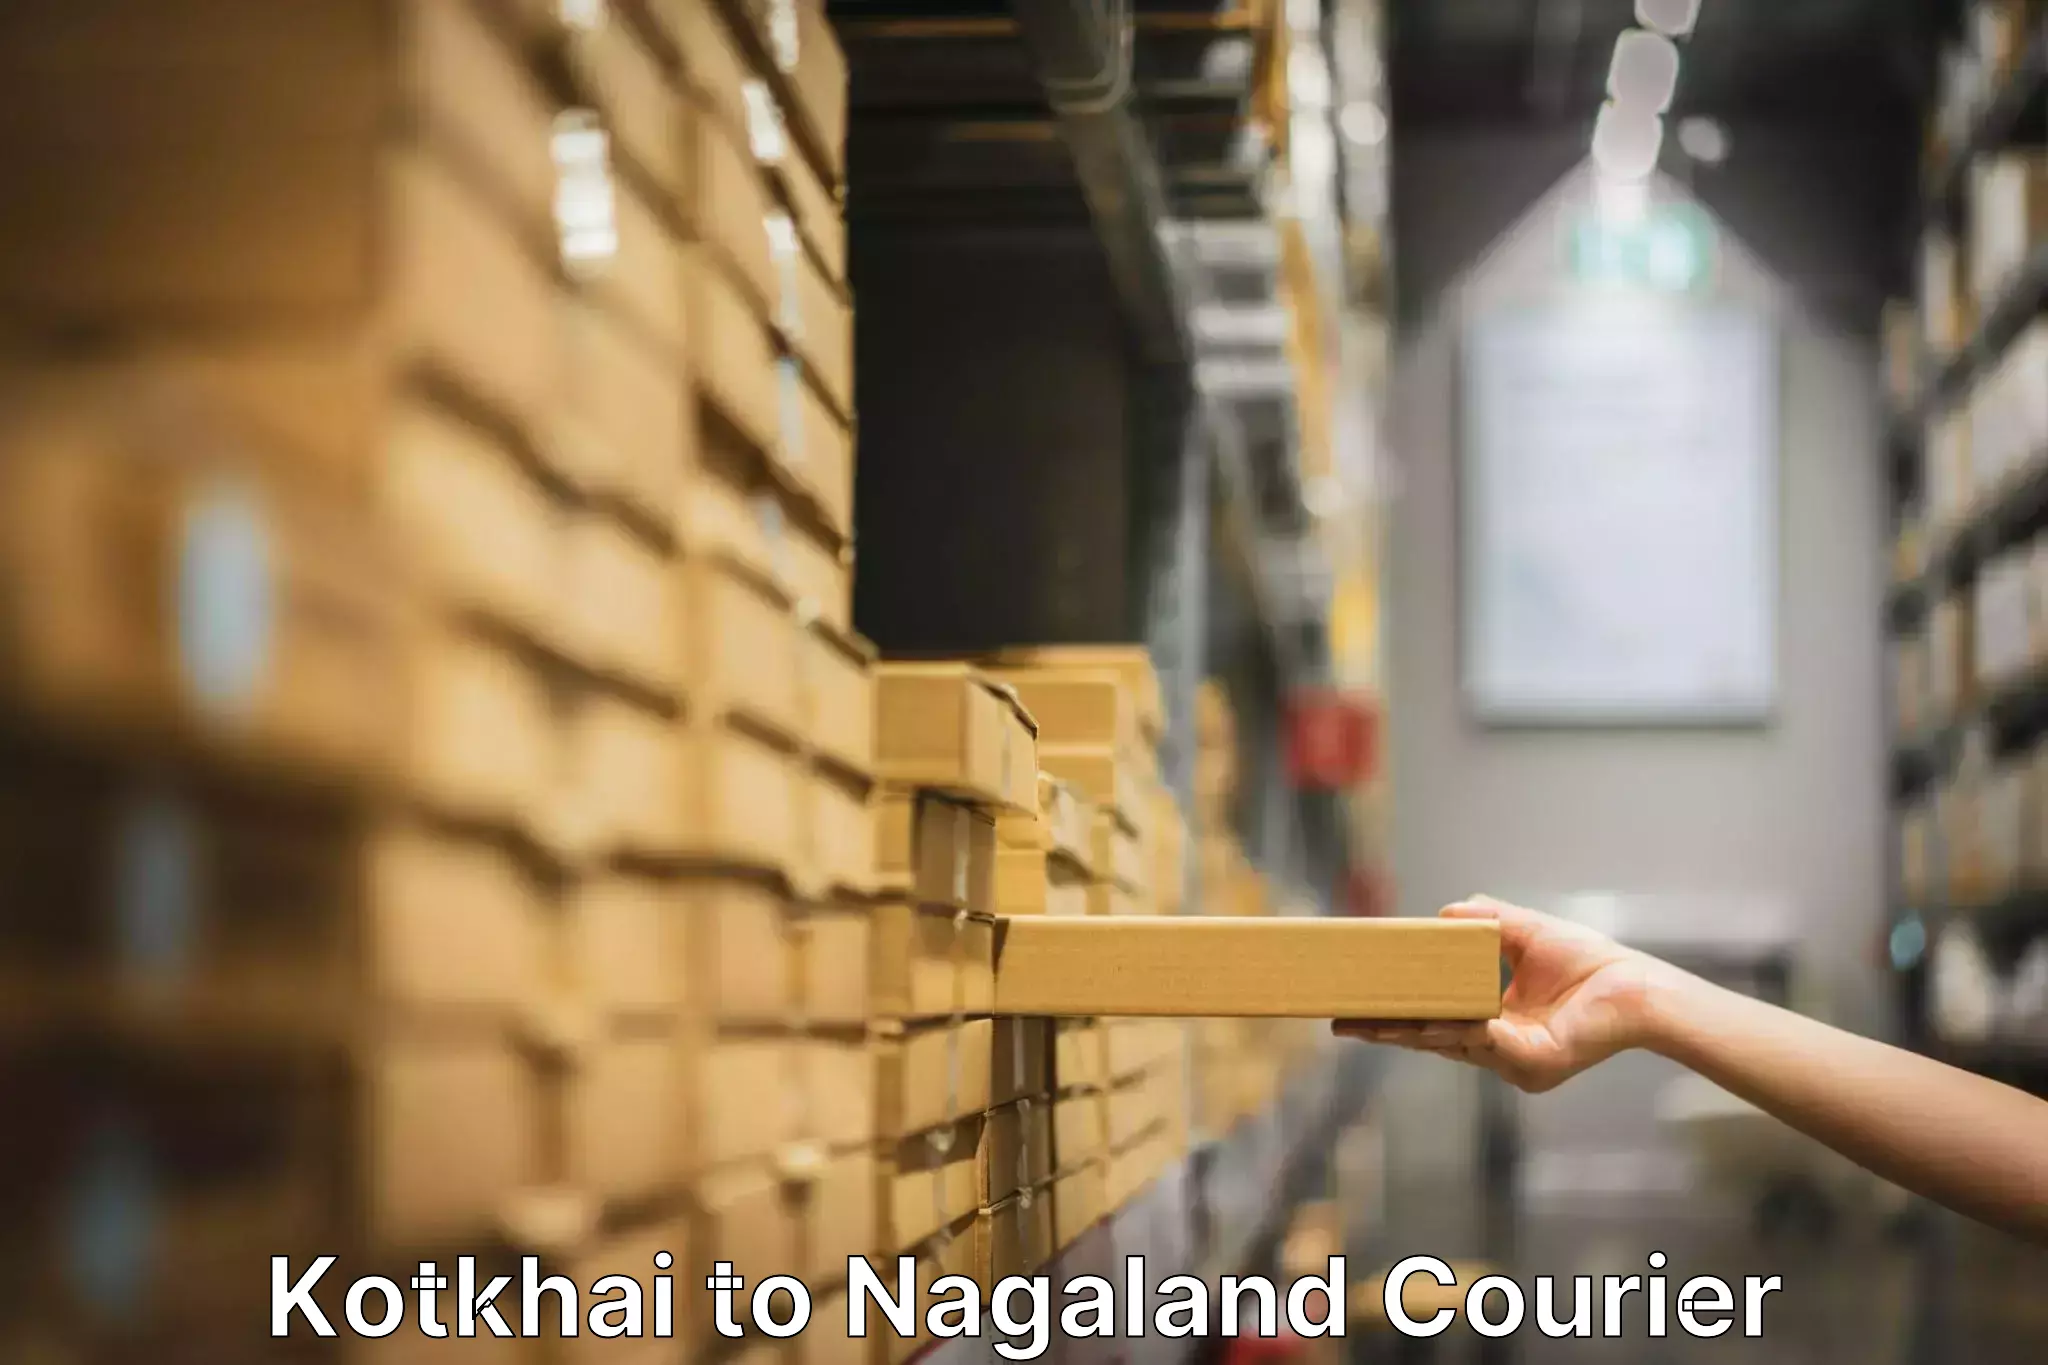 Customized furniture moving Kotkhai to Nagaland